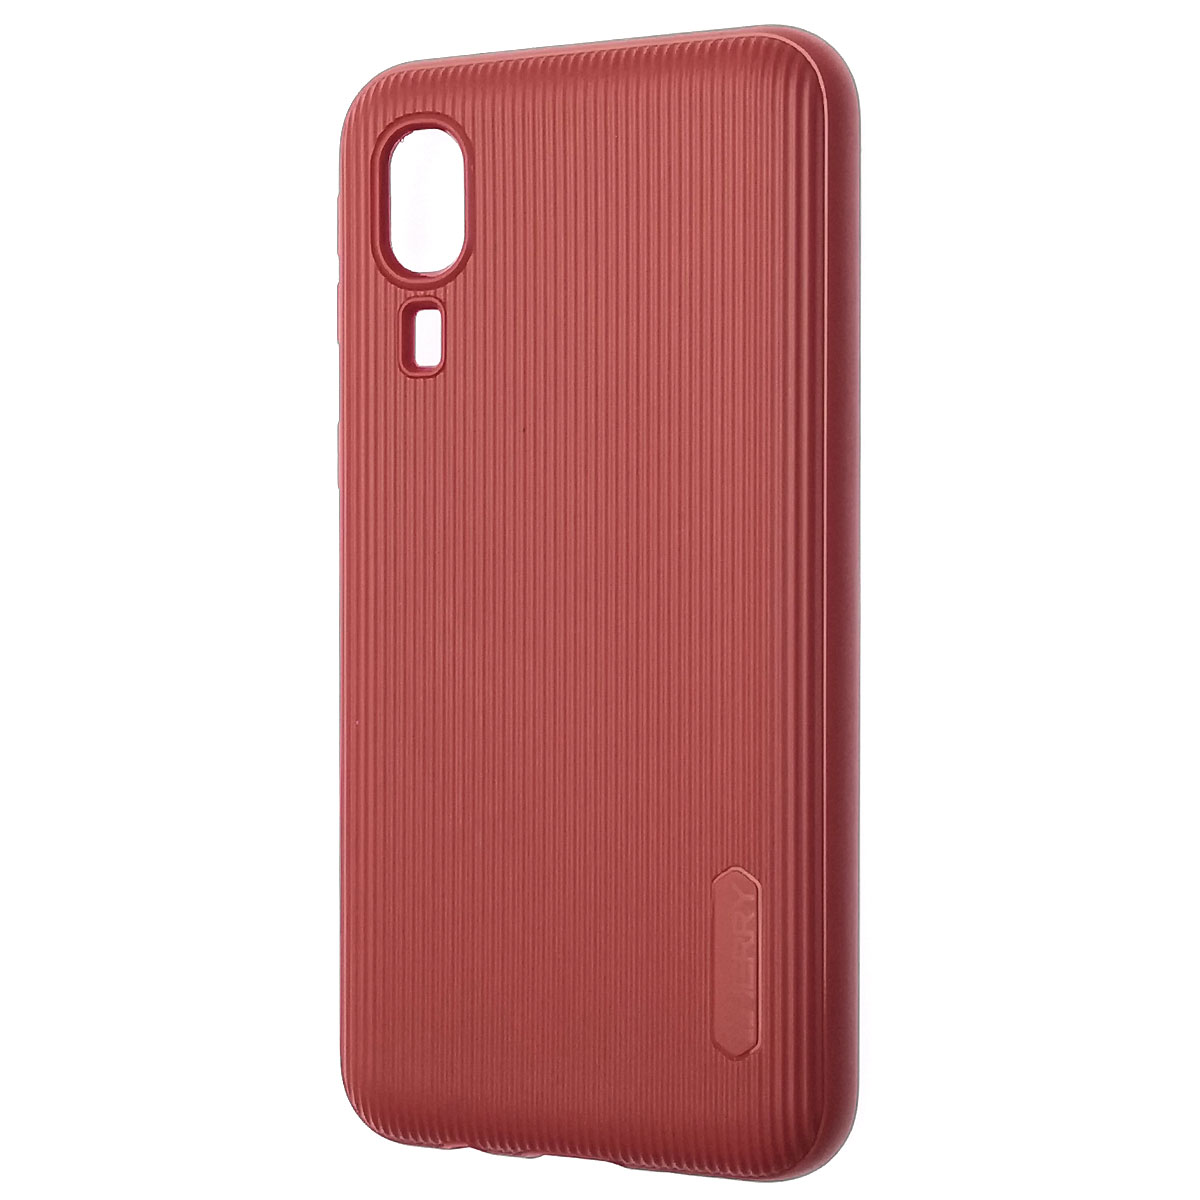 Чехол накладка Cherry для SAMSUNG Galaxy A2 Core (SM-A260), силикон, полоски, цвет темно красный.